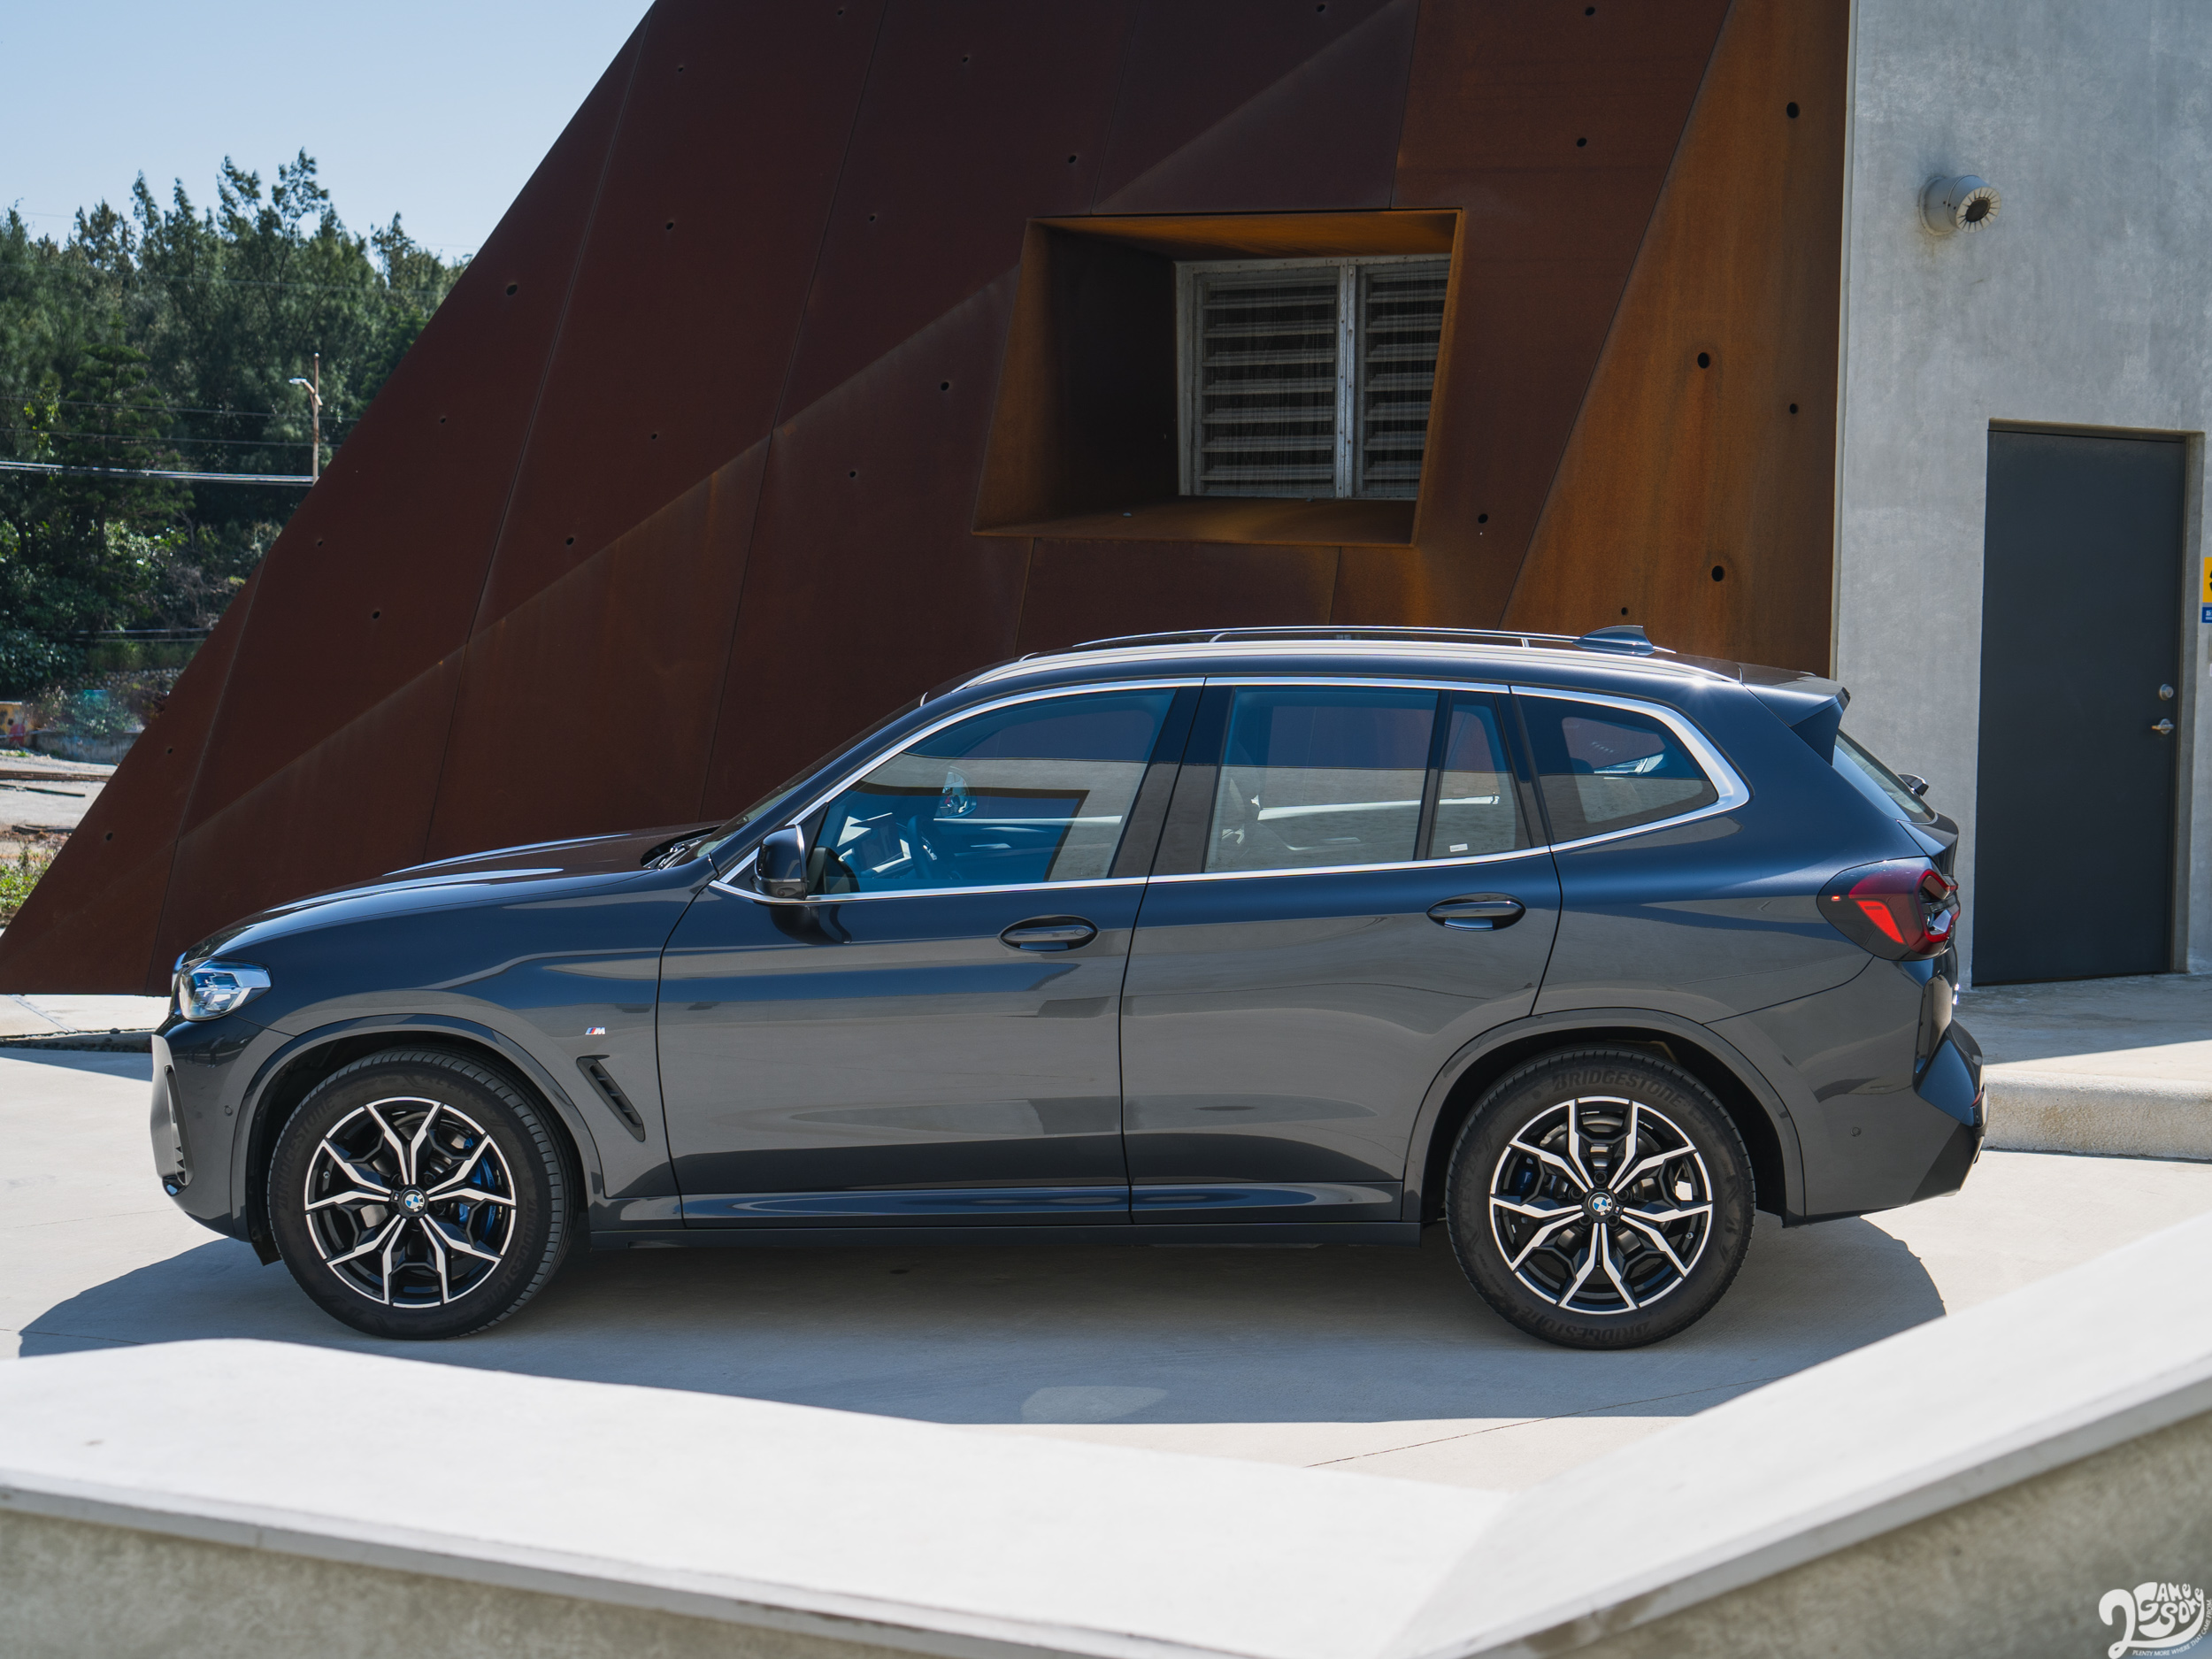 G 世代 X3 配置 BMW Group 旗下 CLAR 模組化技術平台架構，也因而在車身尺馬上得以比以往更為擴增。